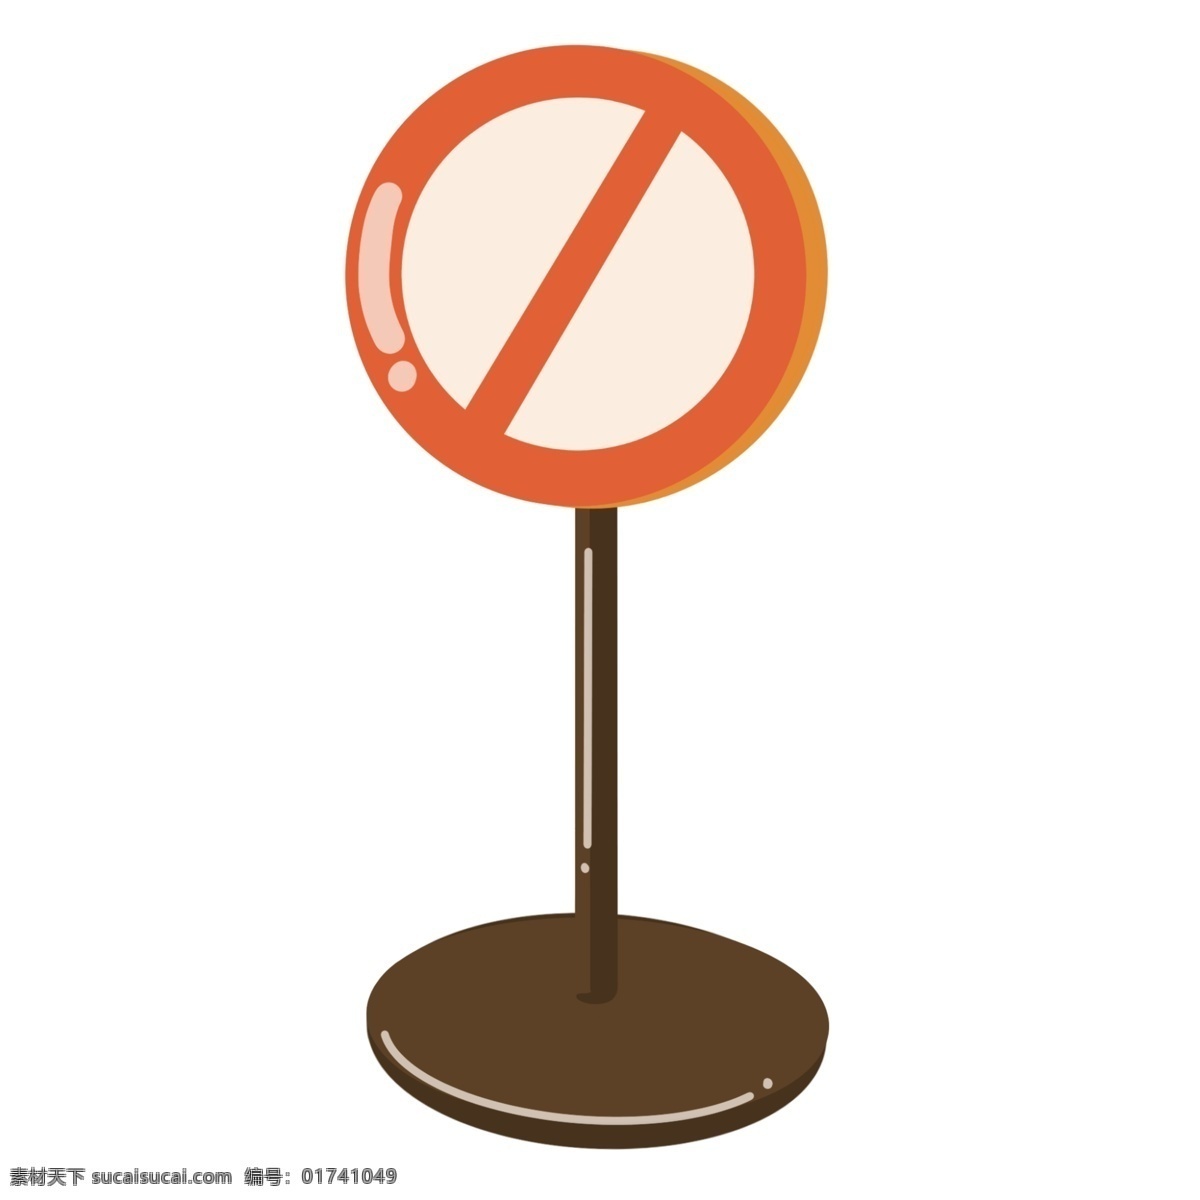 道路 牌 指示牌 插画 路牌 路标 交通 道路牌 公路牌 红色 禁止 禁止牌子 路牌插画